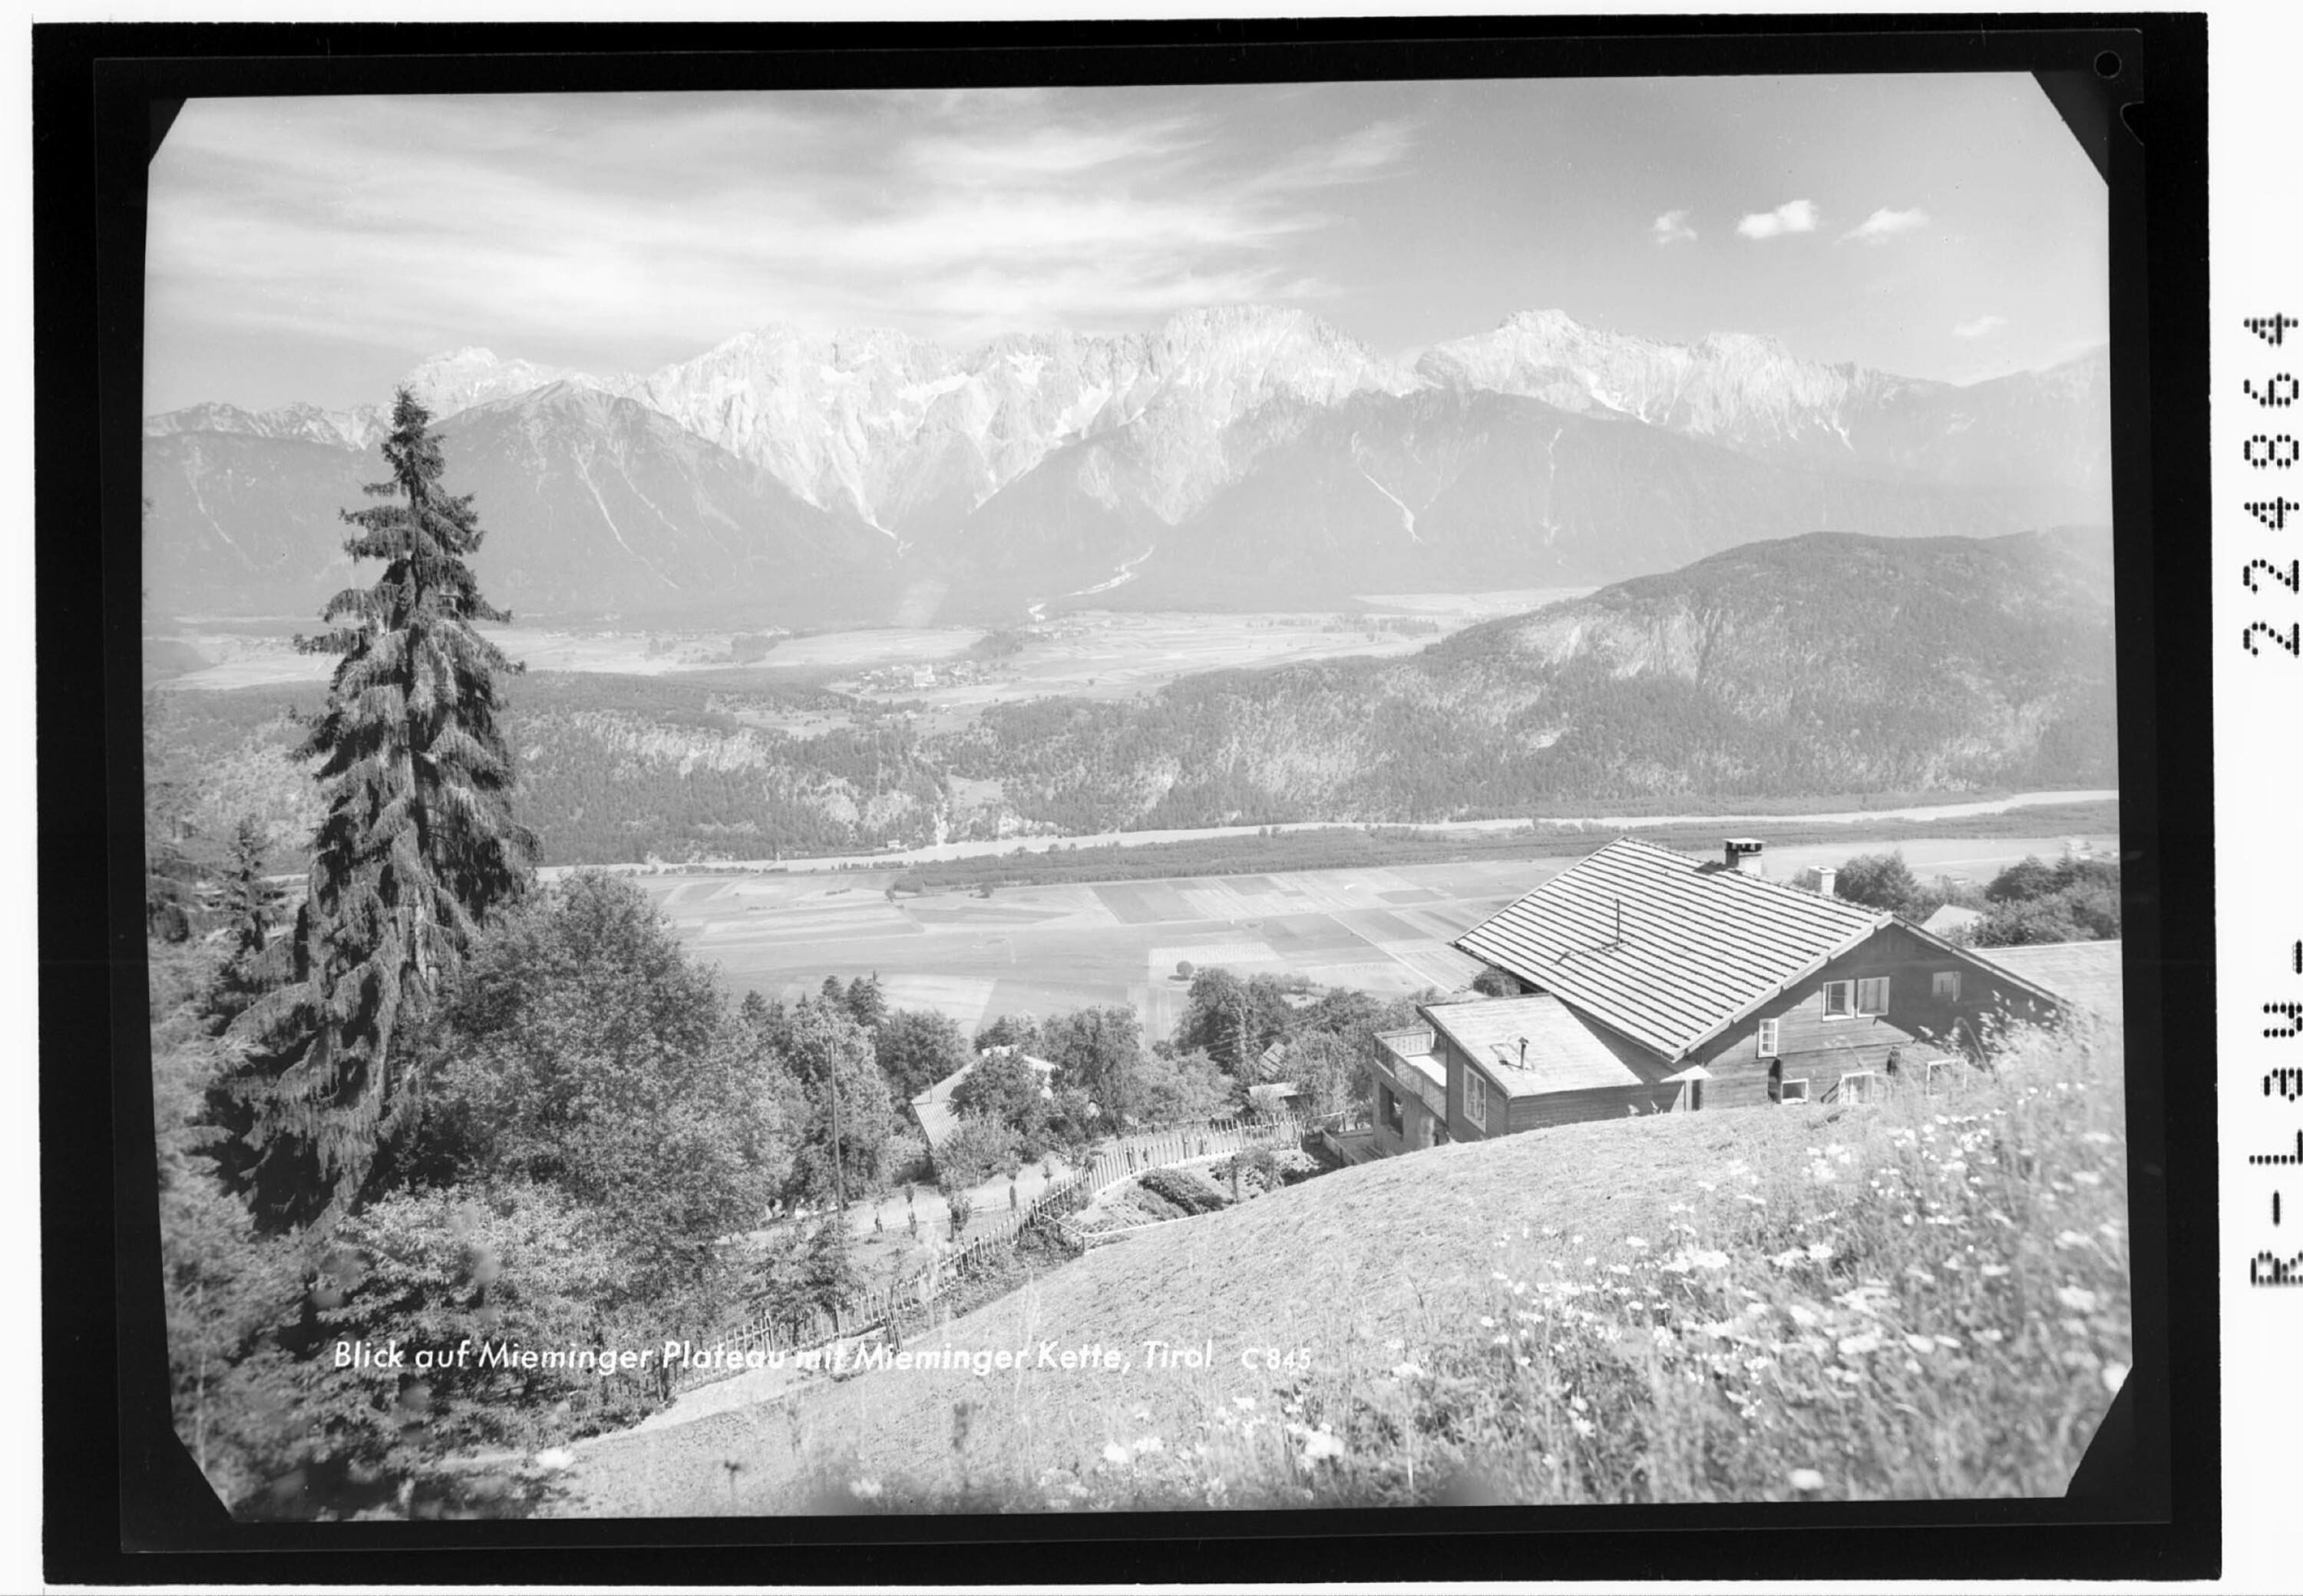 Blick auf Mieminger Plateau mit Mieminger Kette / Tirol></div>


    <hr>
    <div class=